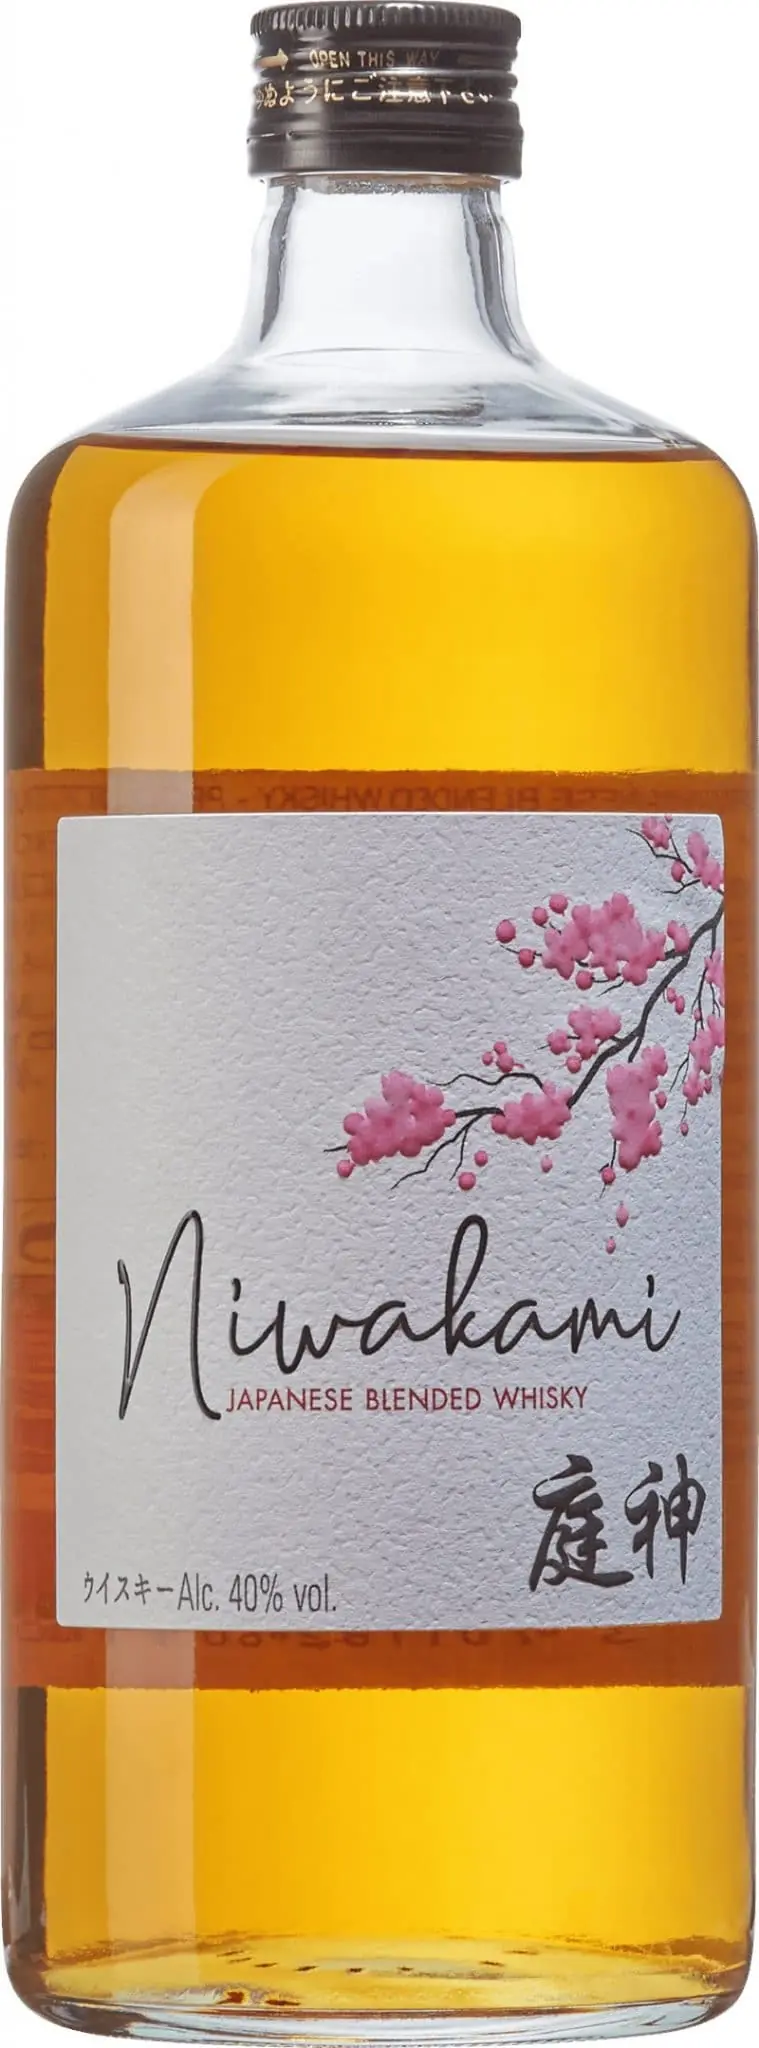 Niwakami Japanese Blended Whisky - Vinjournalen.se